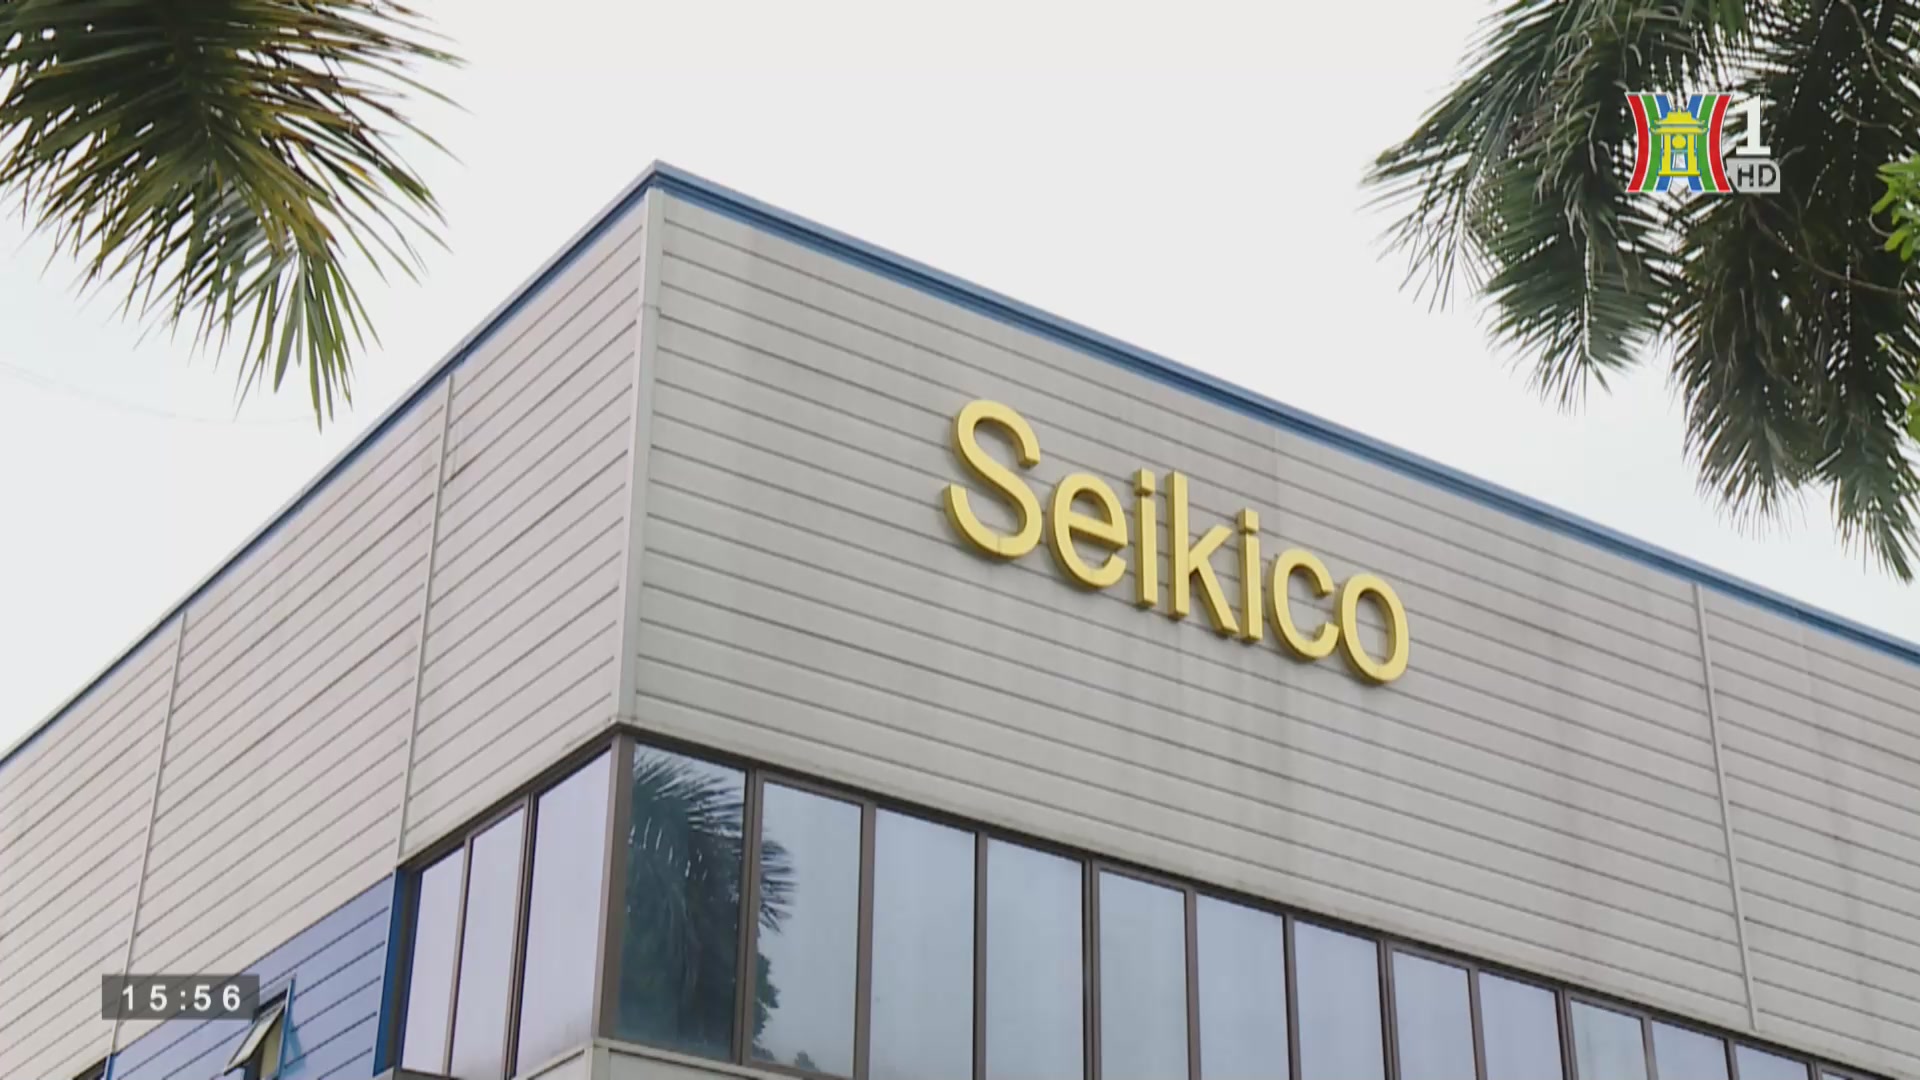 Seikico thương hiệu mạnh về cơ khí chính xác của Hà Nội